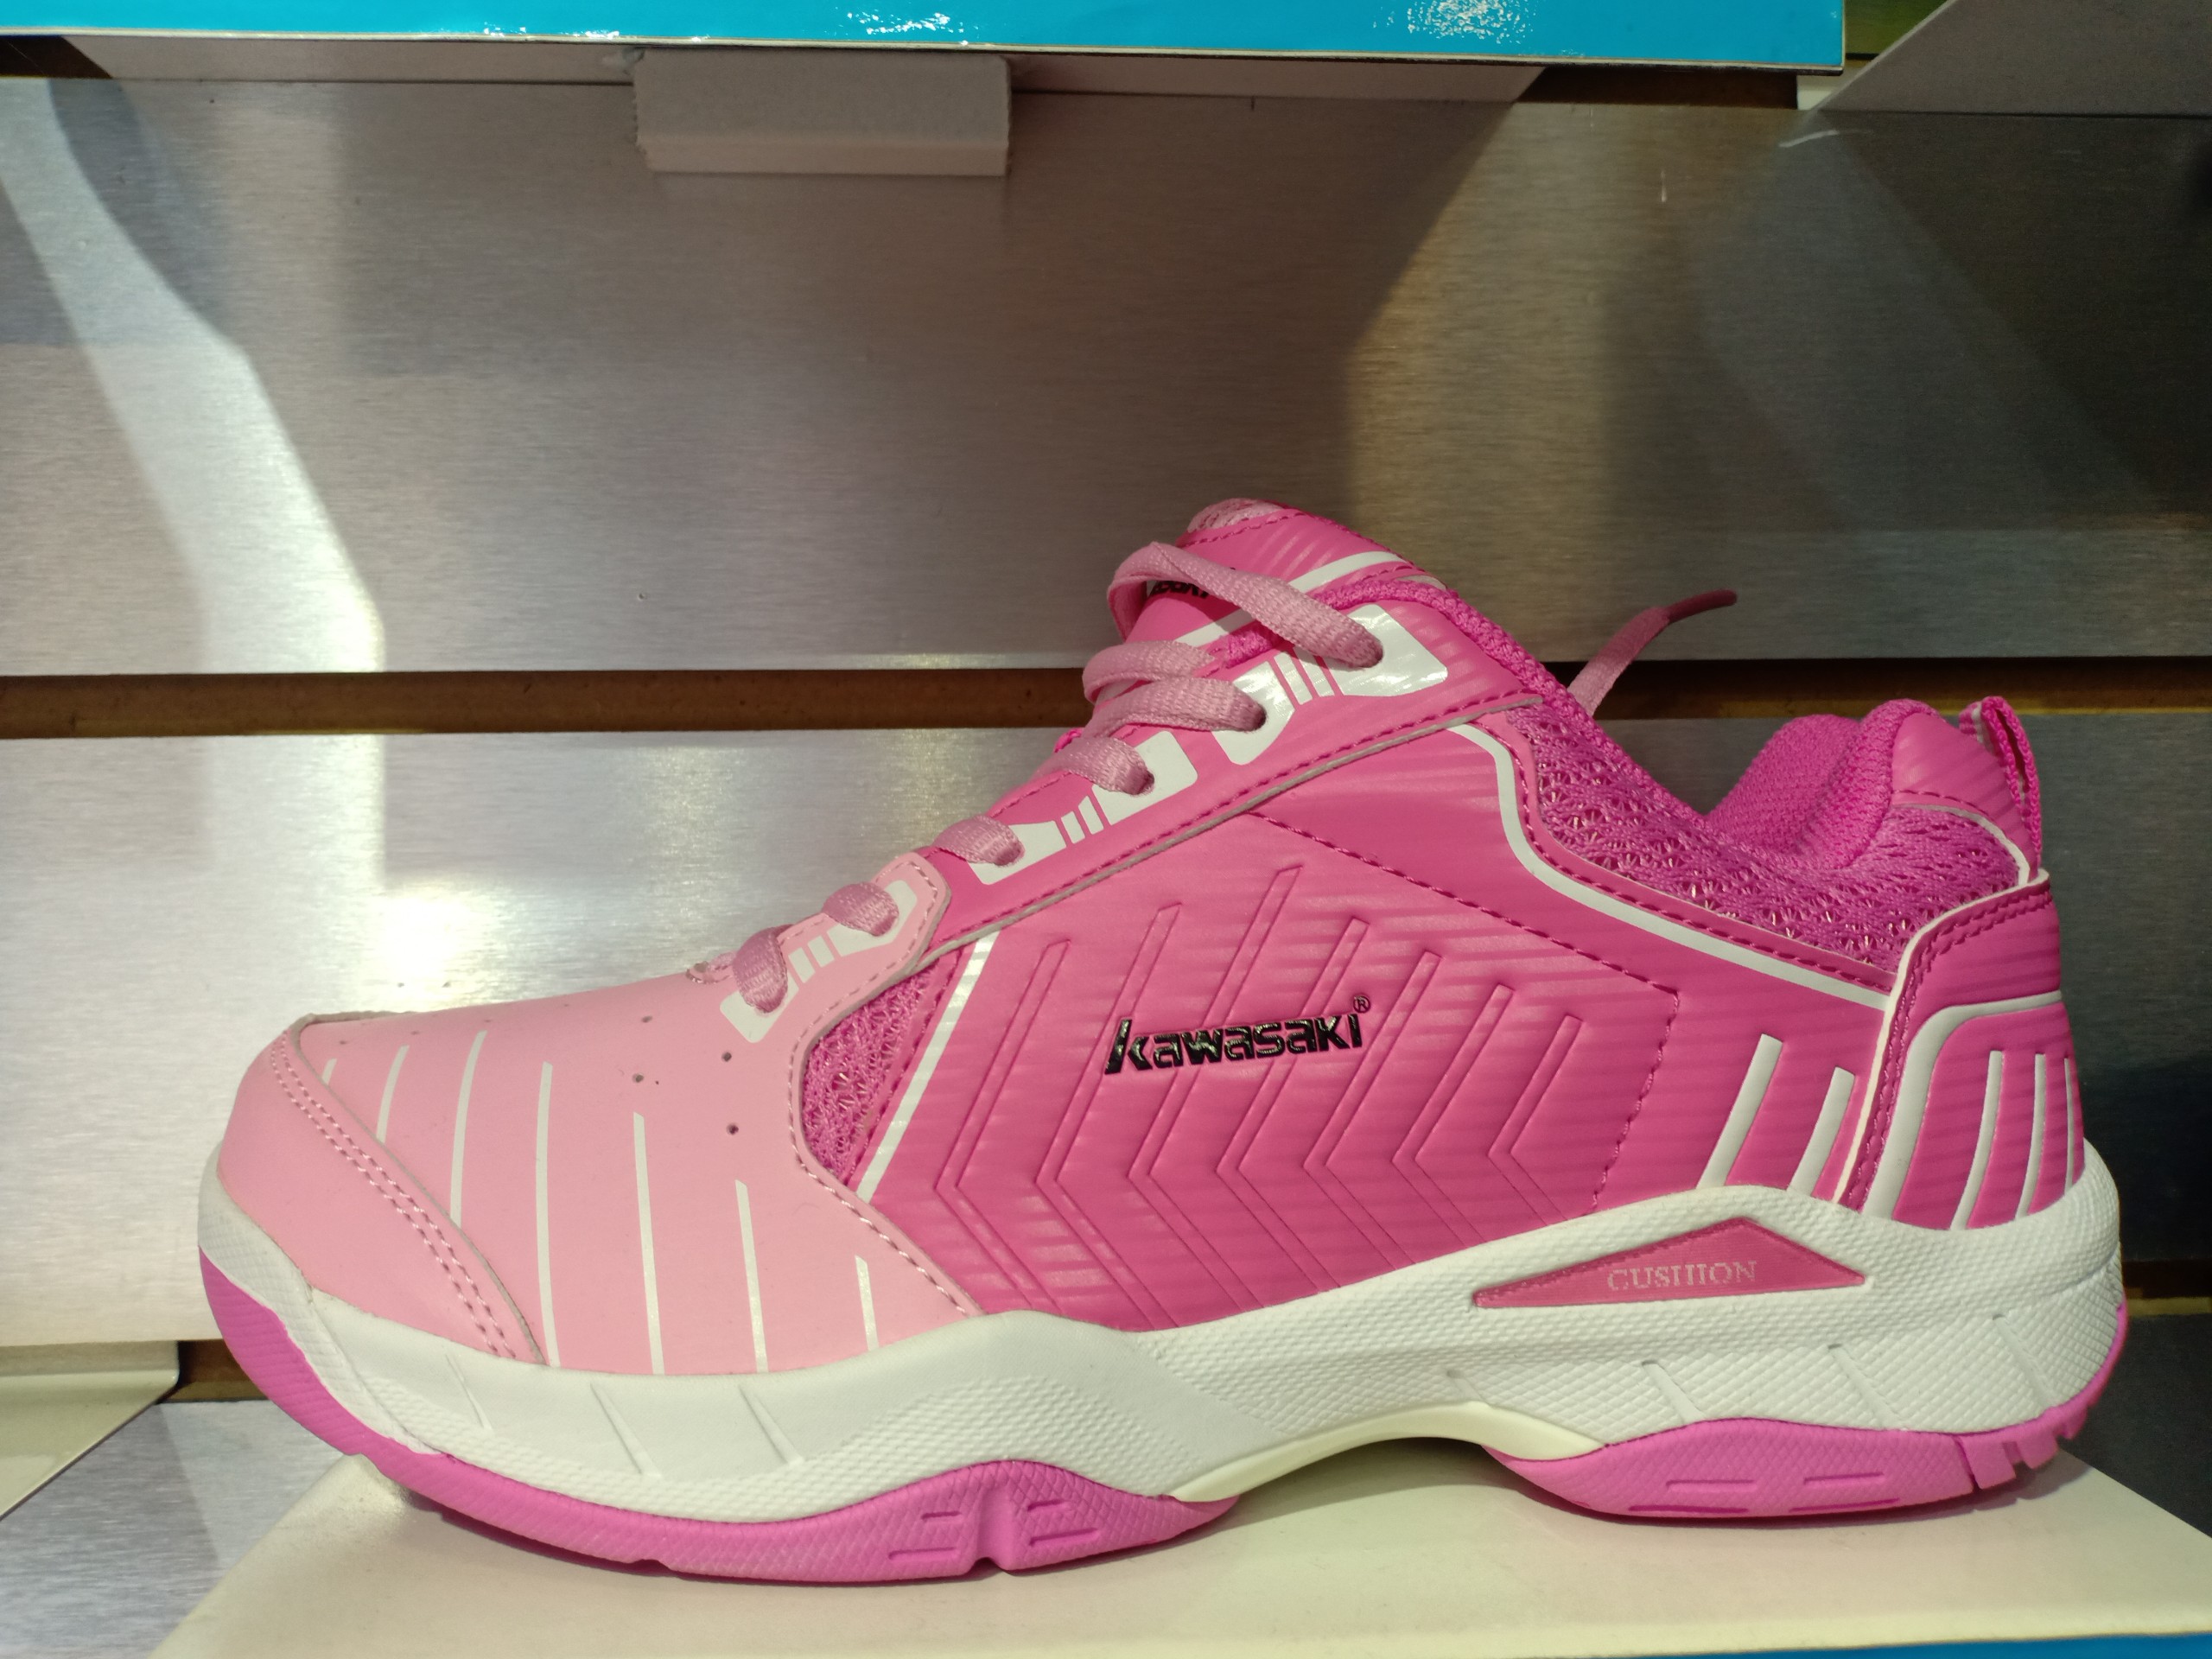 Giày cầu lông bóng chuyền Kawasaki chính hãng màu hồng trắng